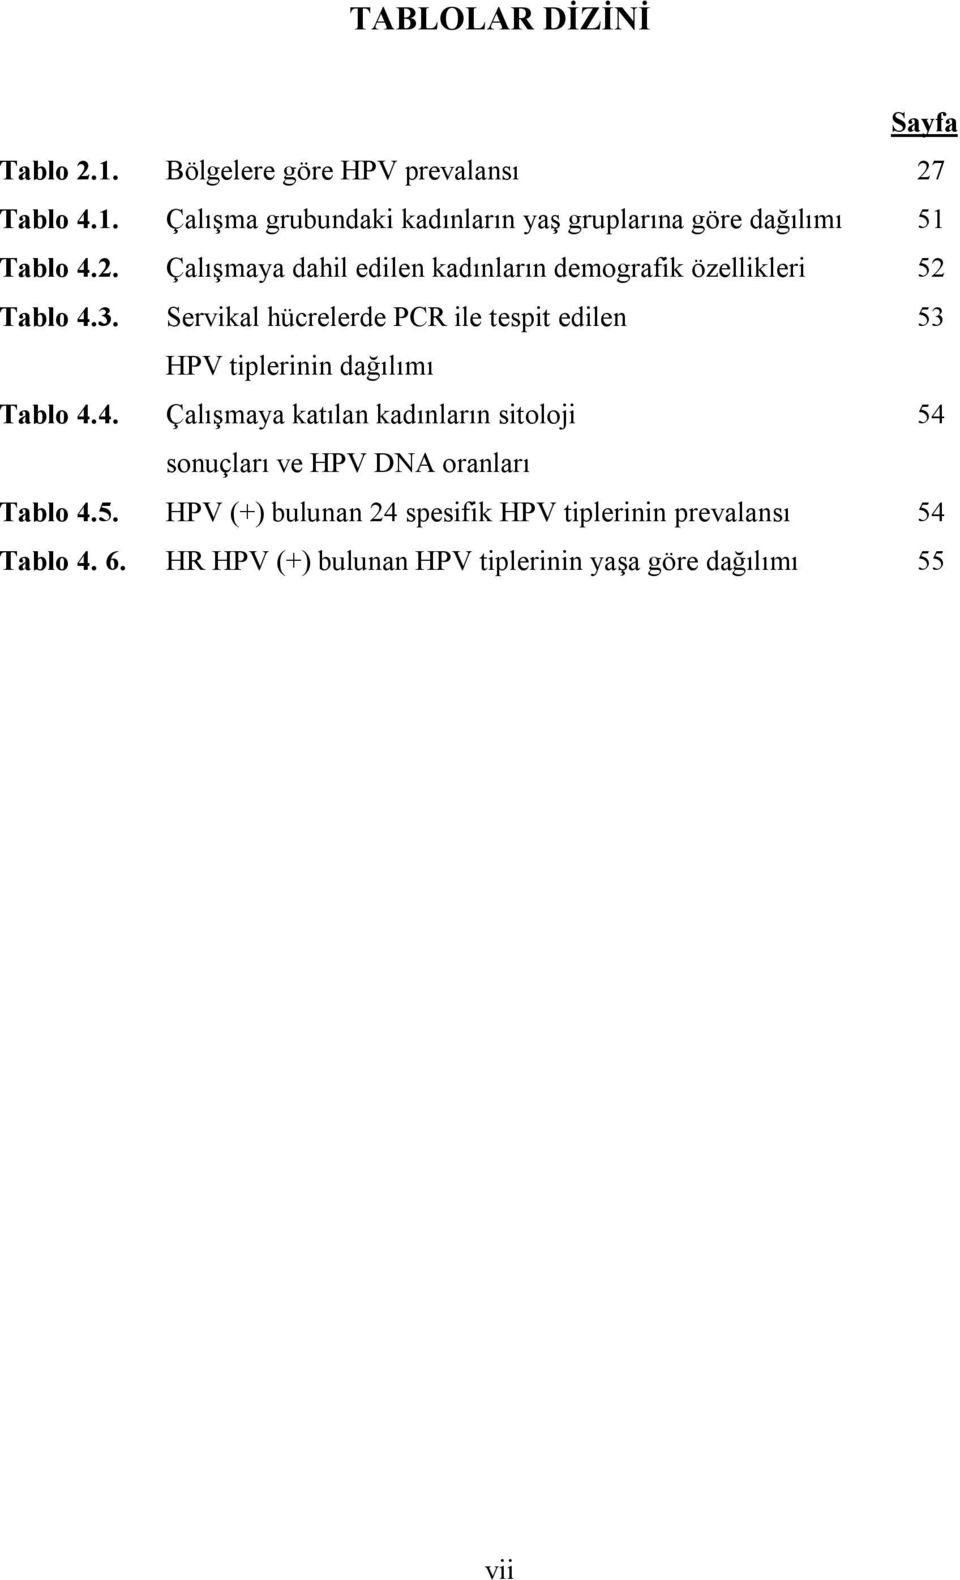 Servikal hücrelerde PCR ile tespit edilen 53 HPV tiplerinin dağılımı Tablo 4.